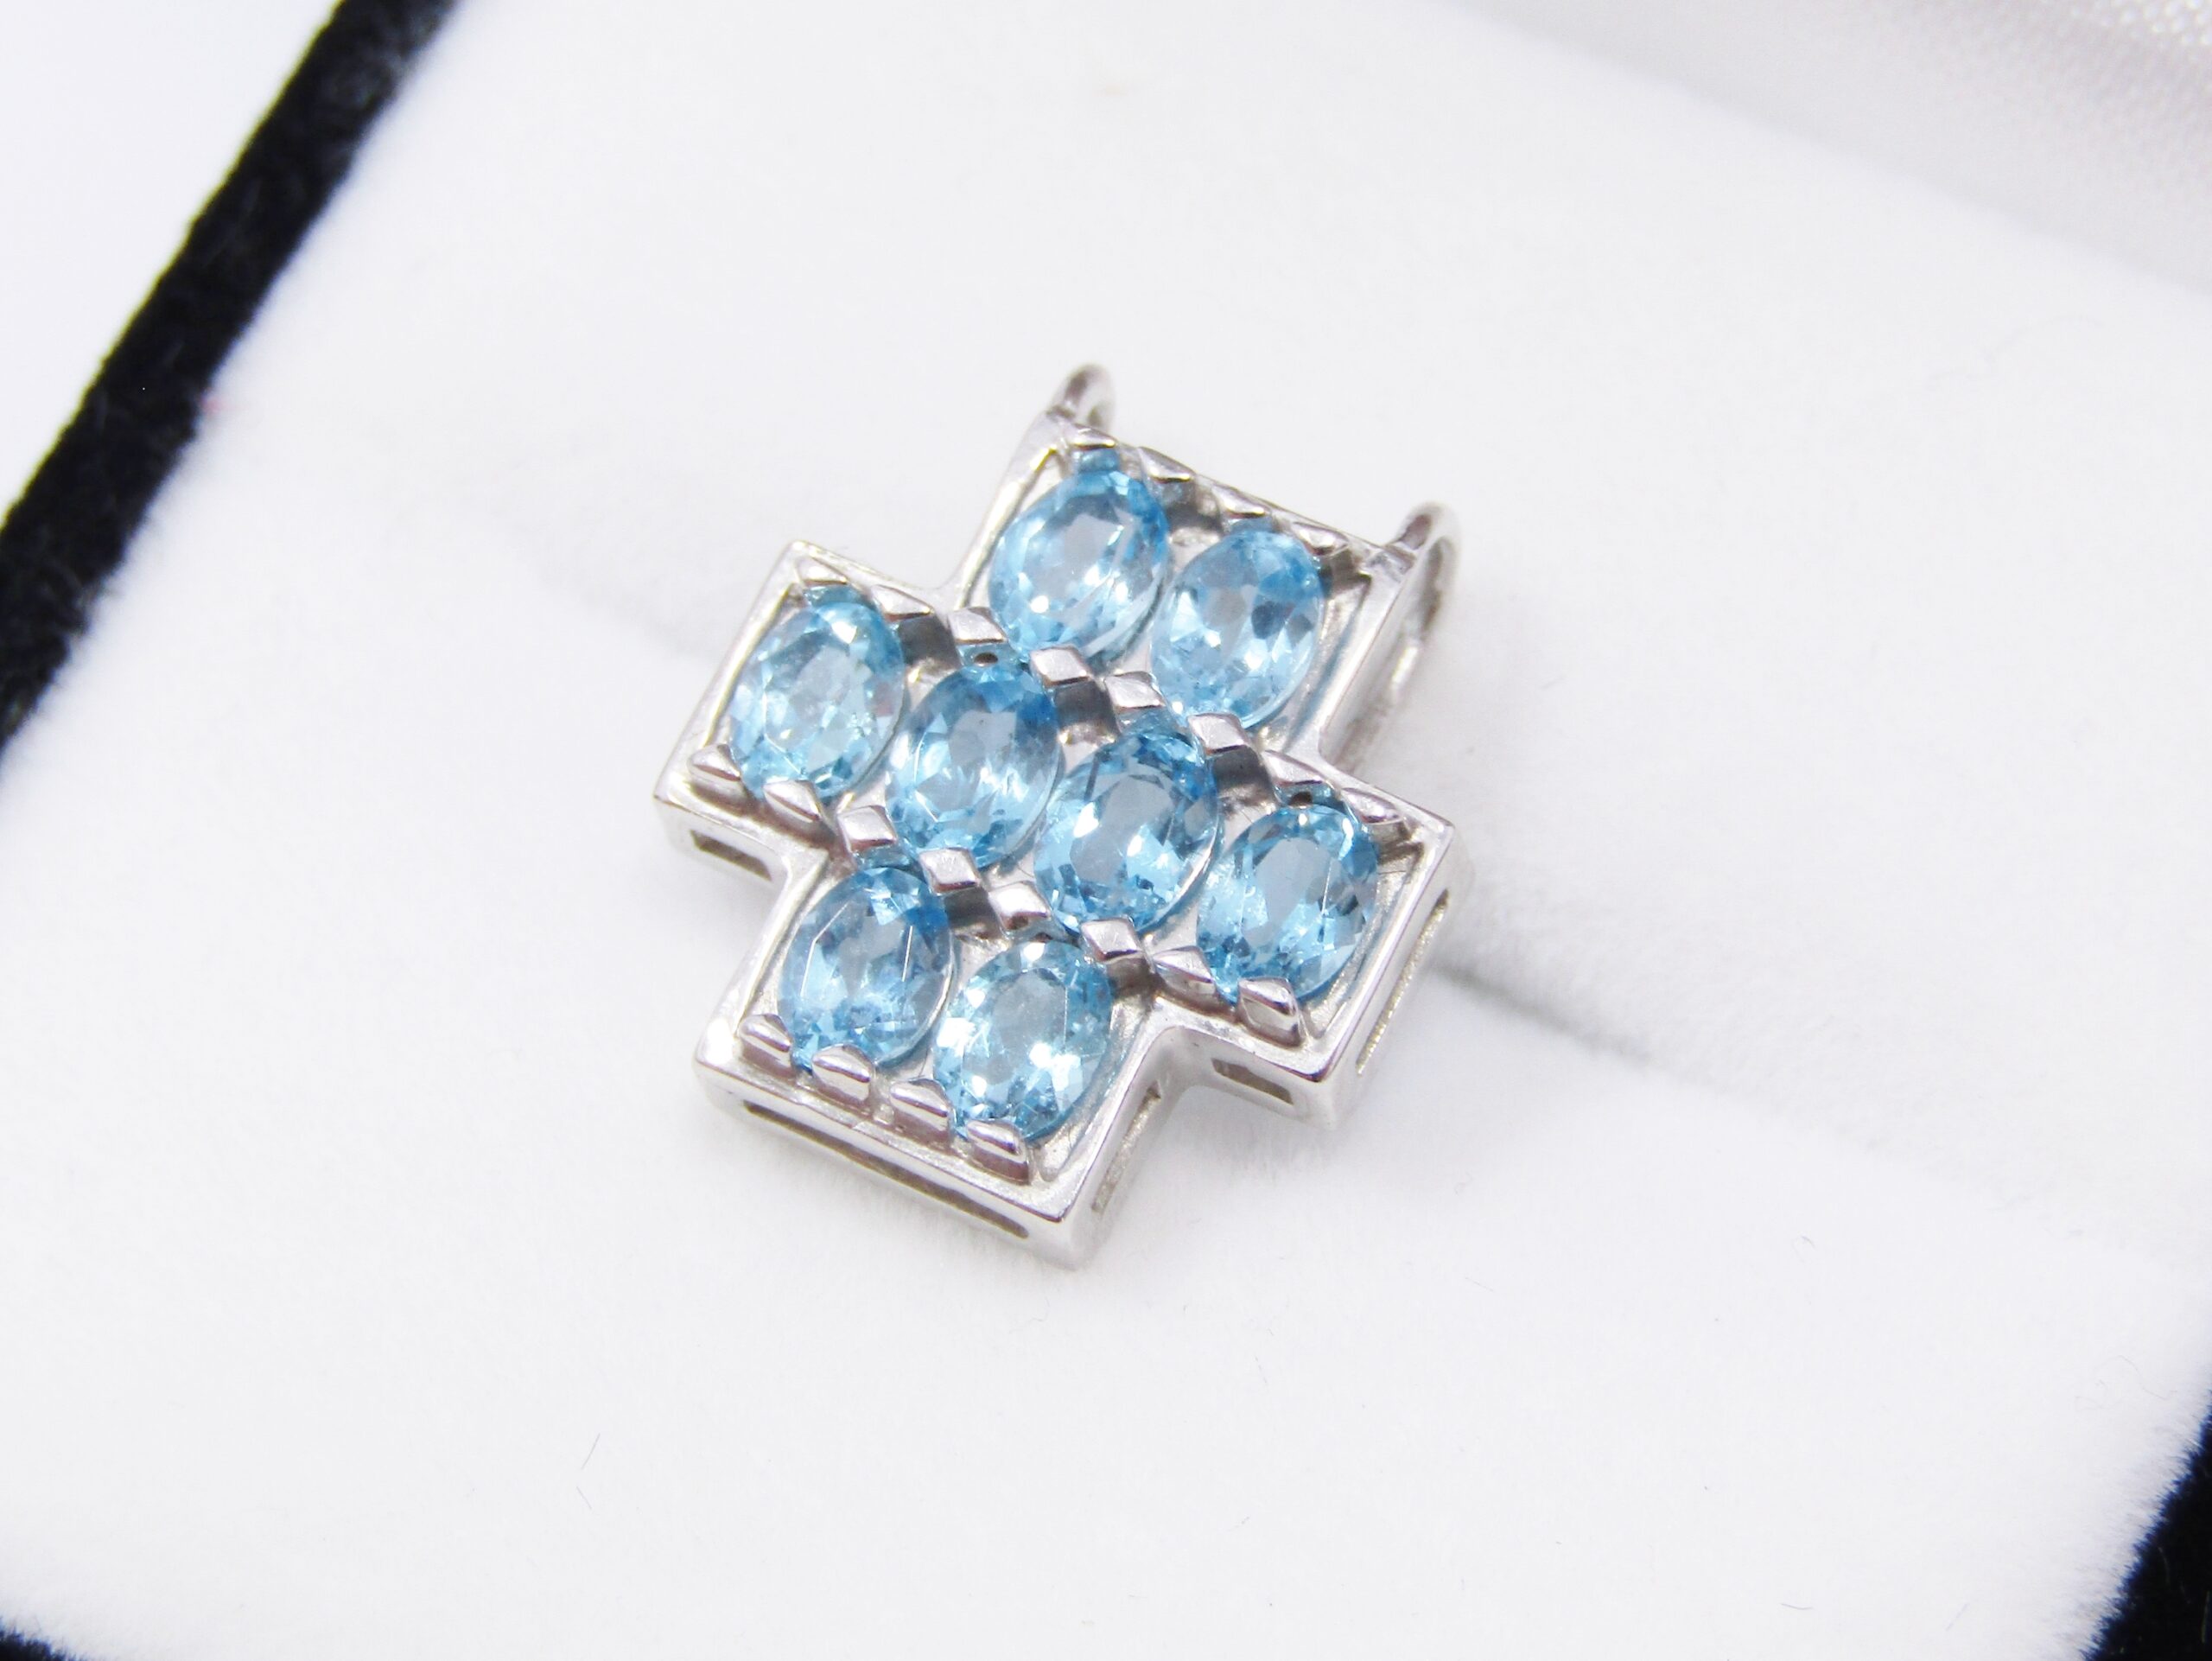 Lovely 10CT White Gold & Blue Topaz Gemstone Pendant